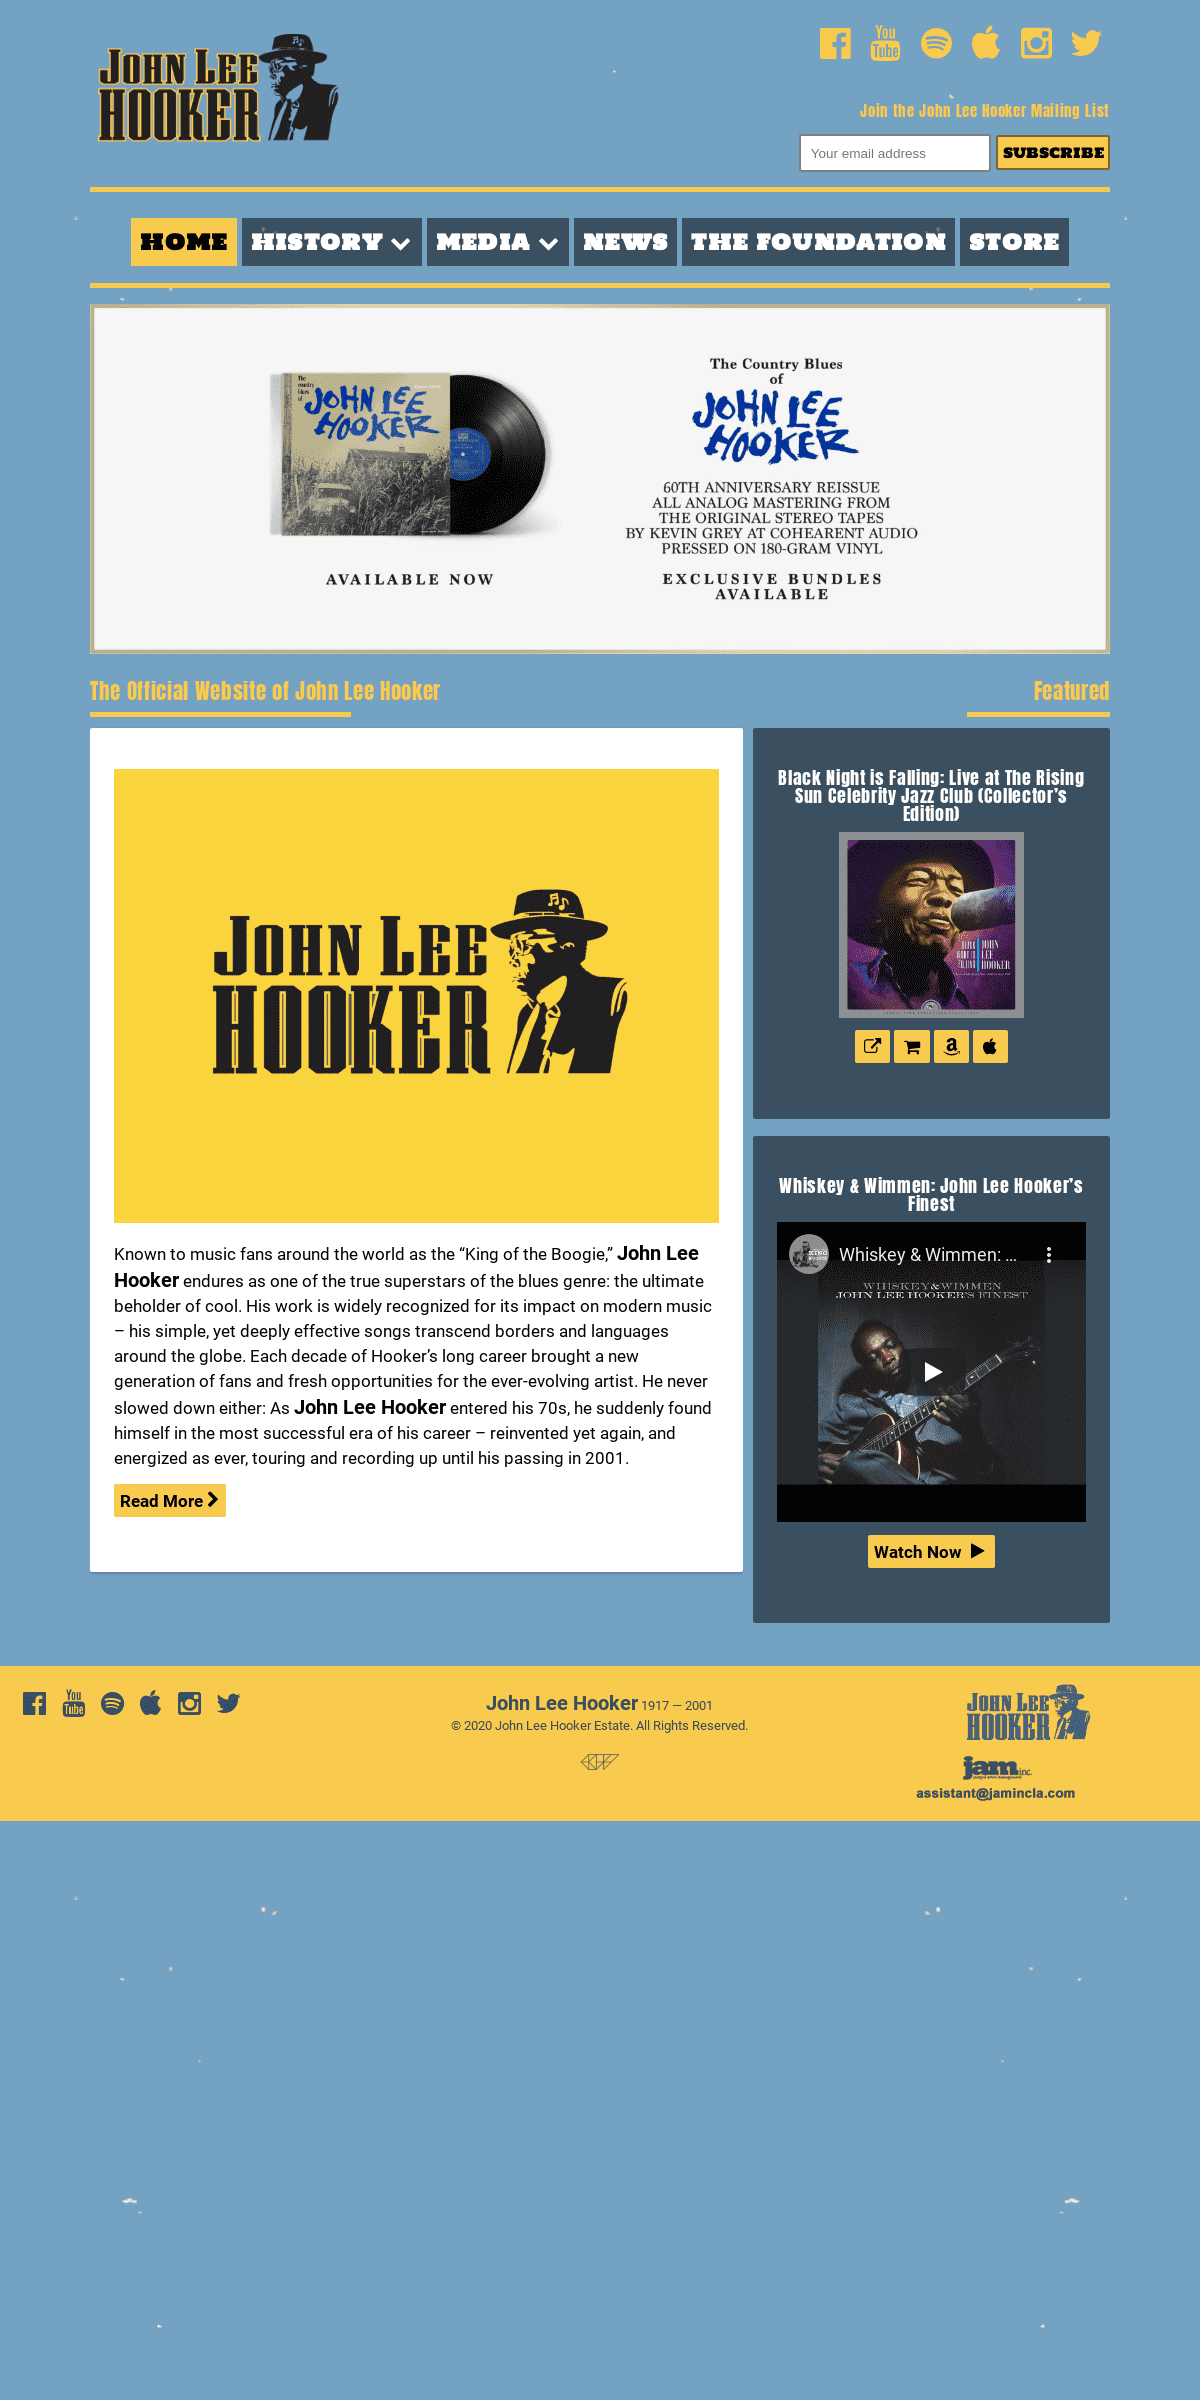 A complete backup of johnleehooker.com